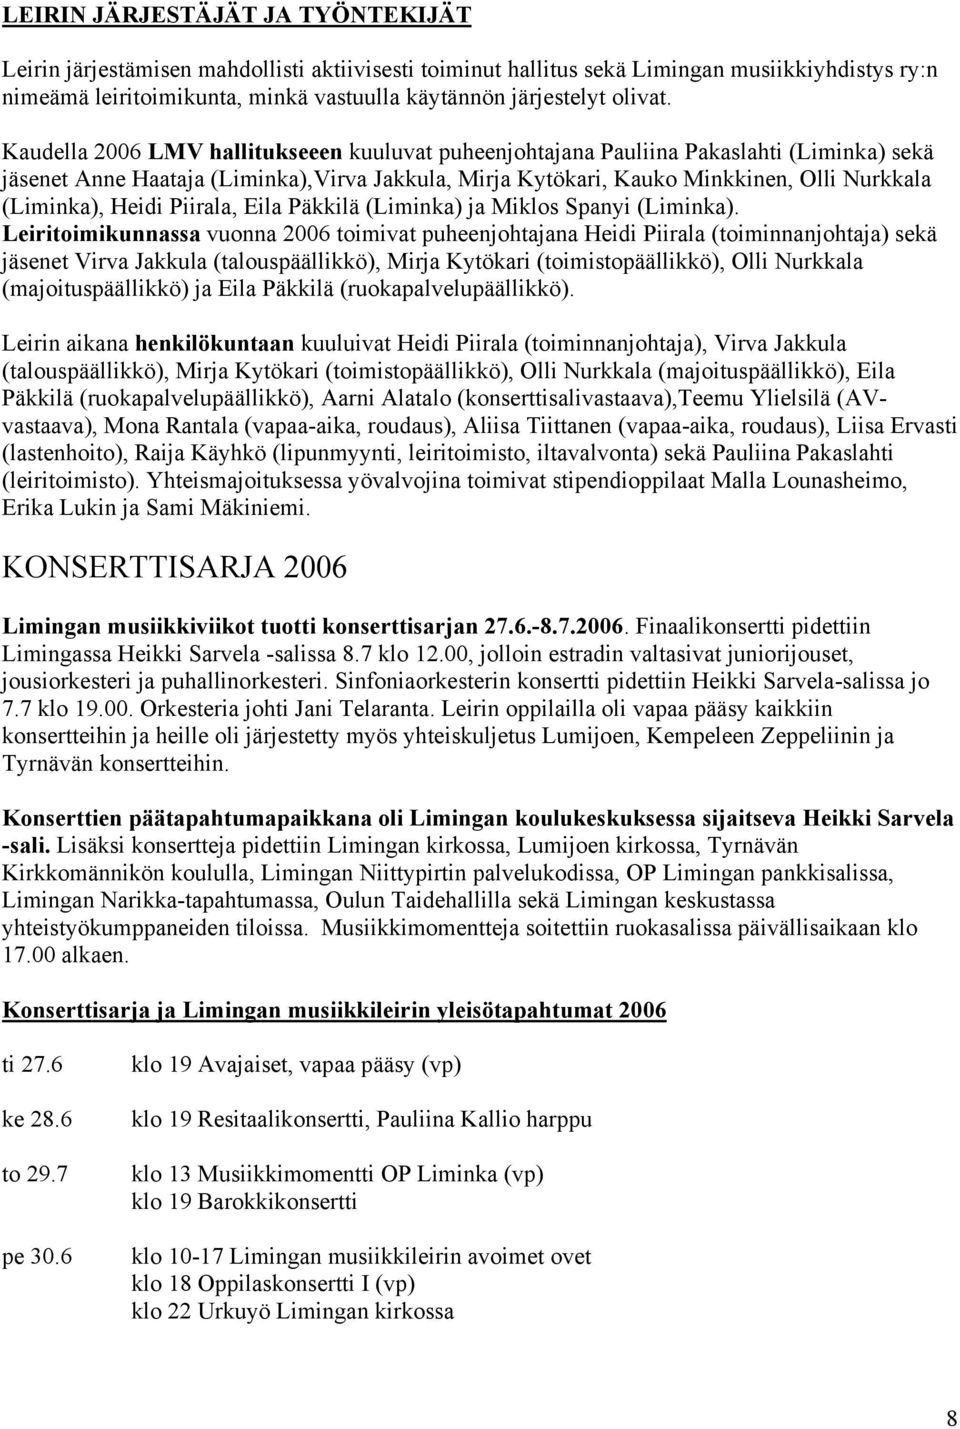 Kaudella 2006 LMV hallitukseeen kuuluvat puheenjohtajana Pauliina Pakaslahti (Liminka) sekä jäsenet Anne Haataja (Liminka),Virva Jakkula, Mirja Kytökari, Kauko Minkkinen, Olli Nurkkala (Liminka),